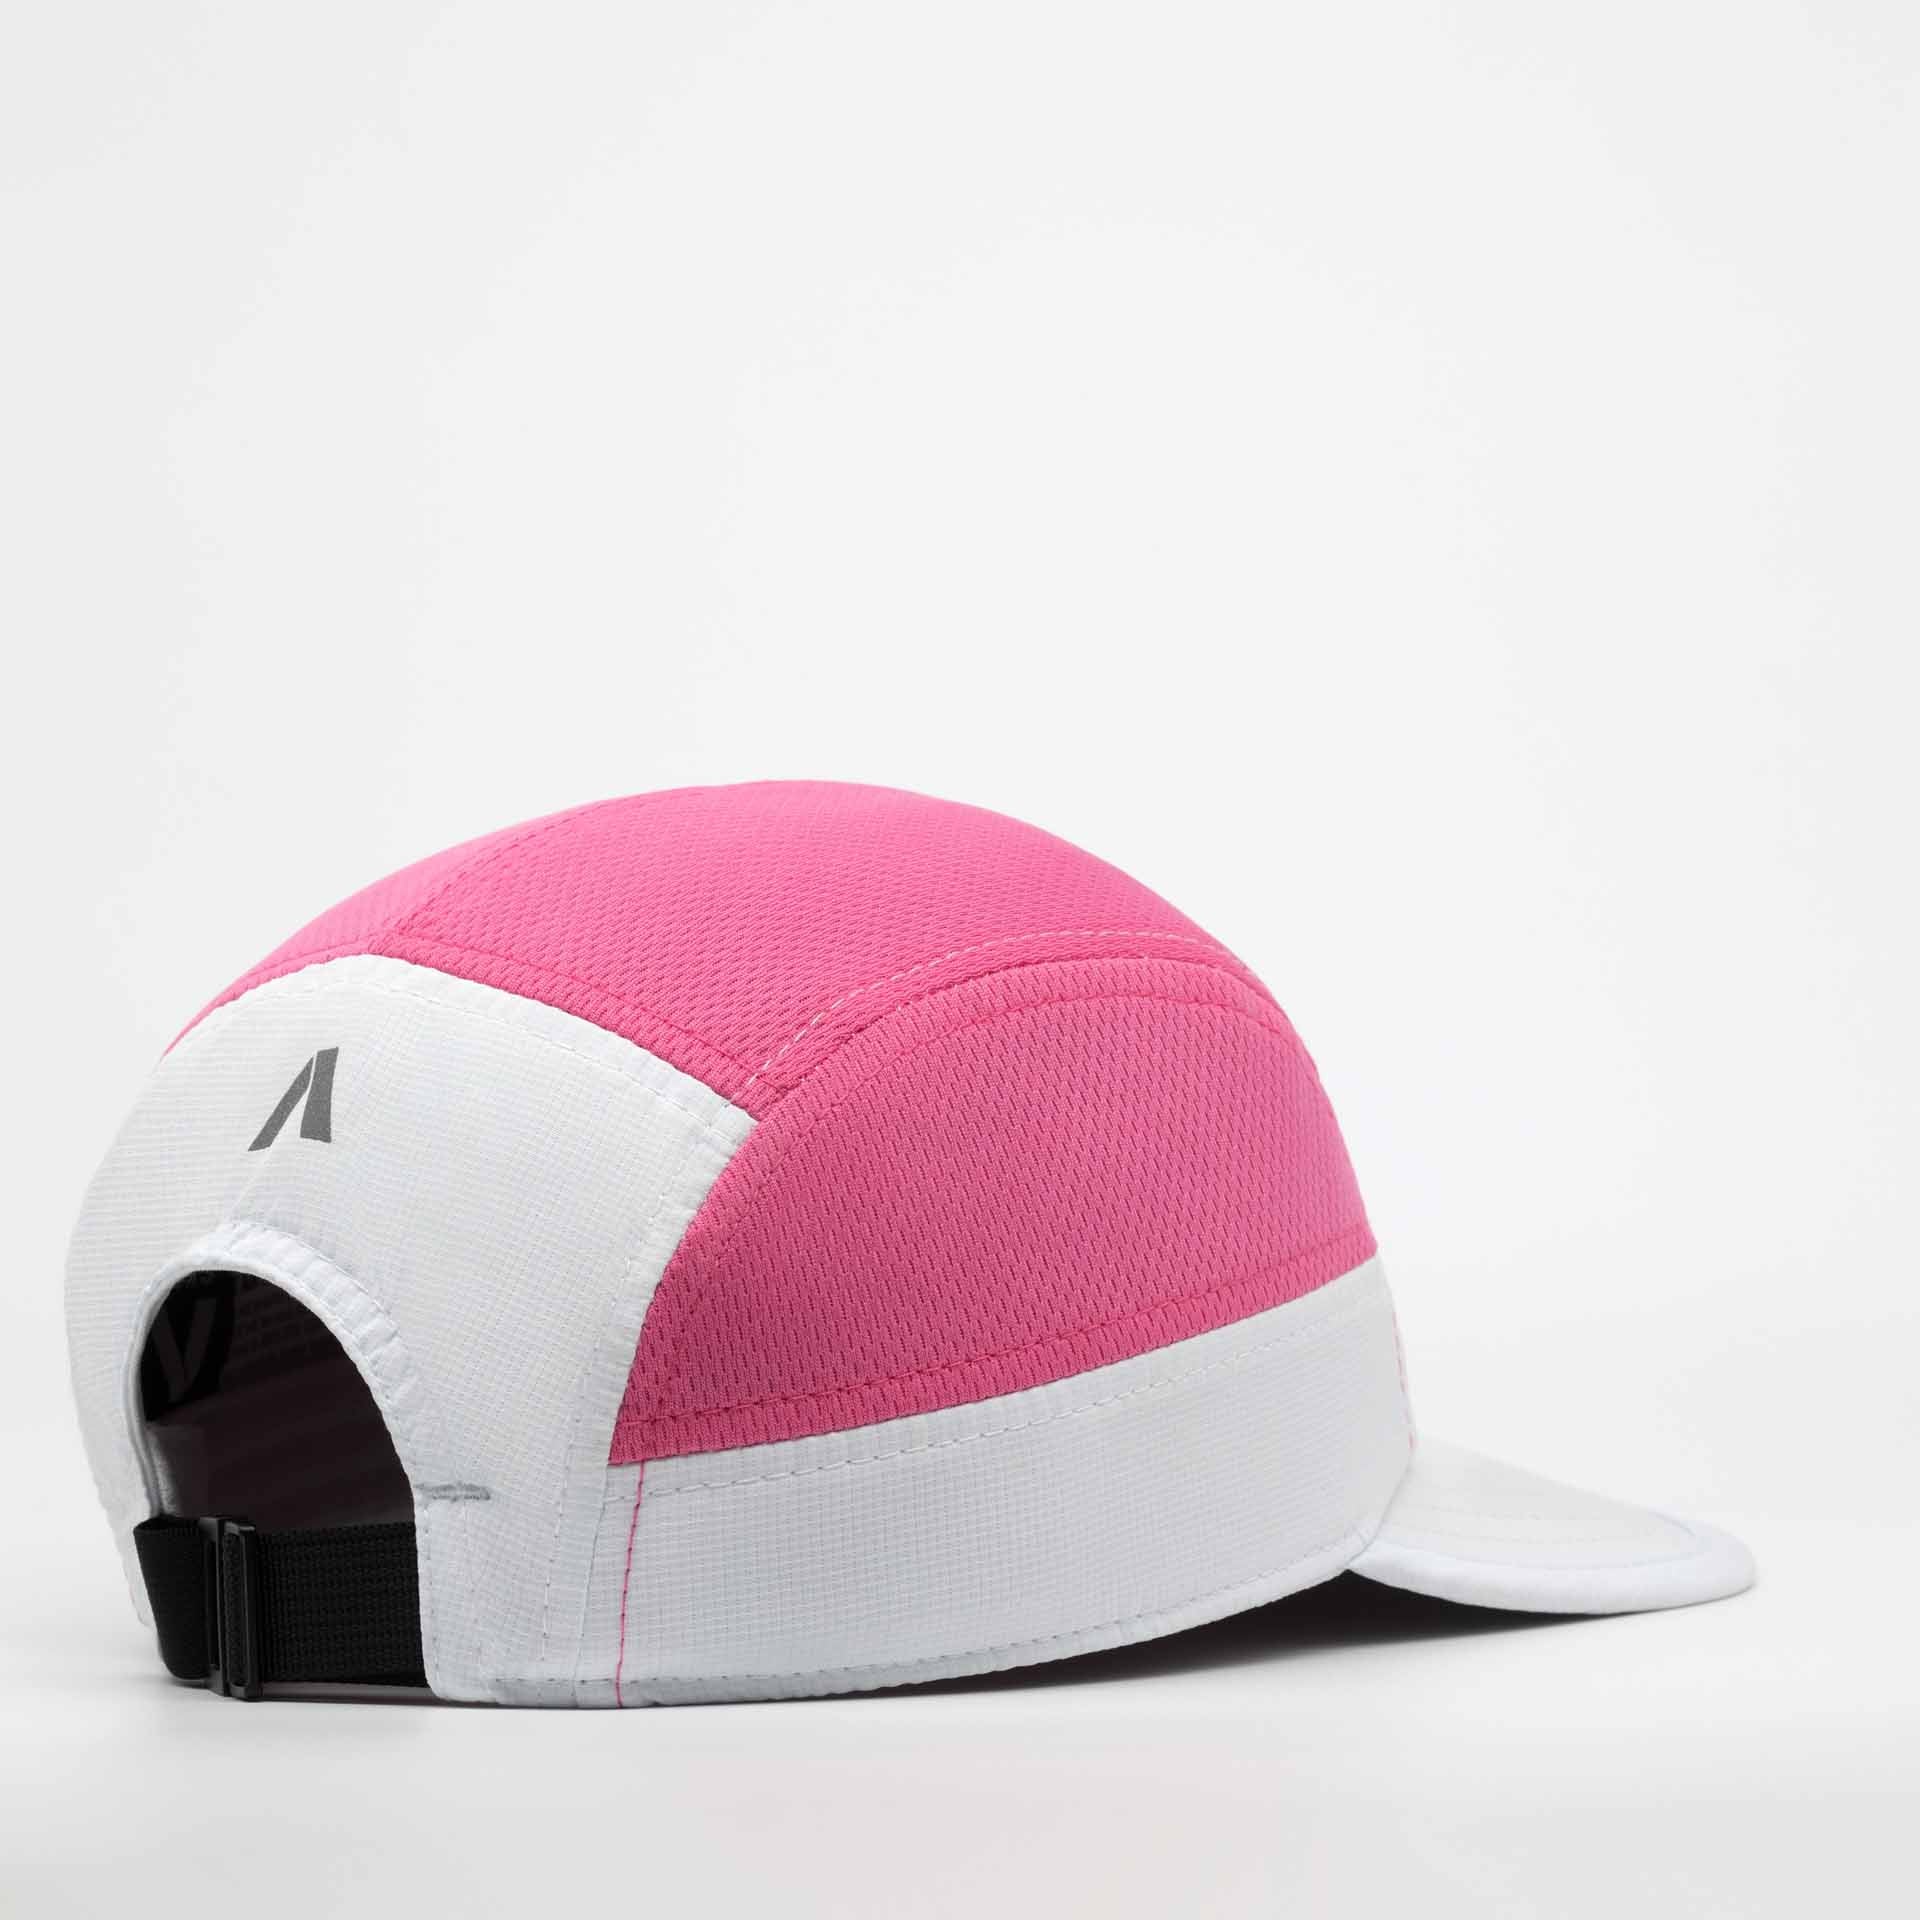 Crest Classic Cap - Pink & White